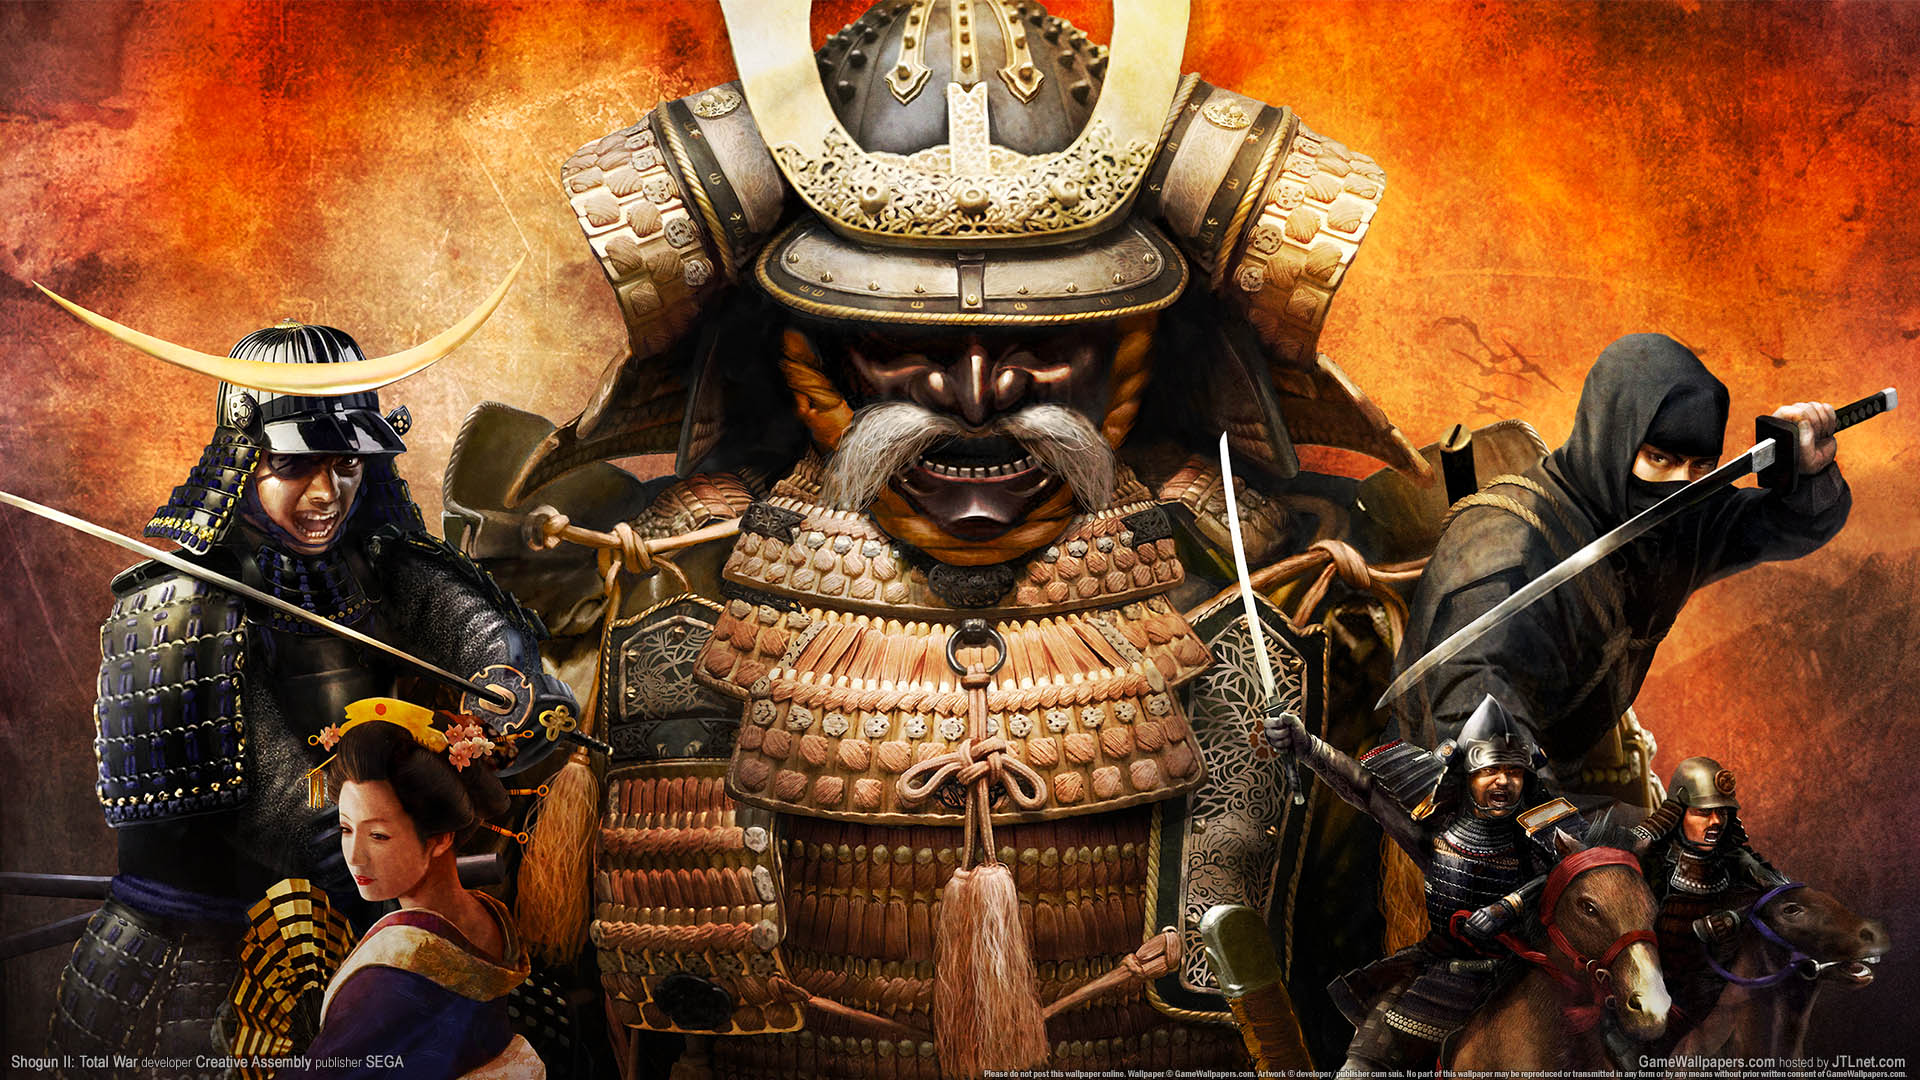 Shogun 2: Total War fond d'cran 01 1920x1080